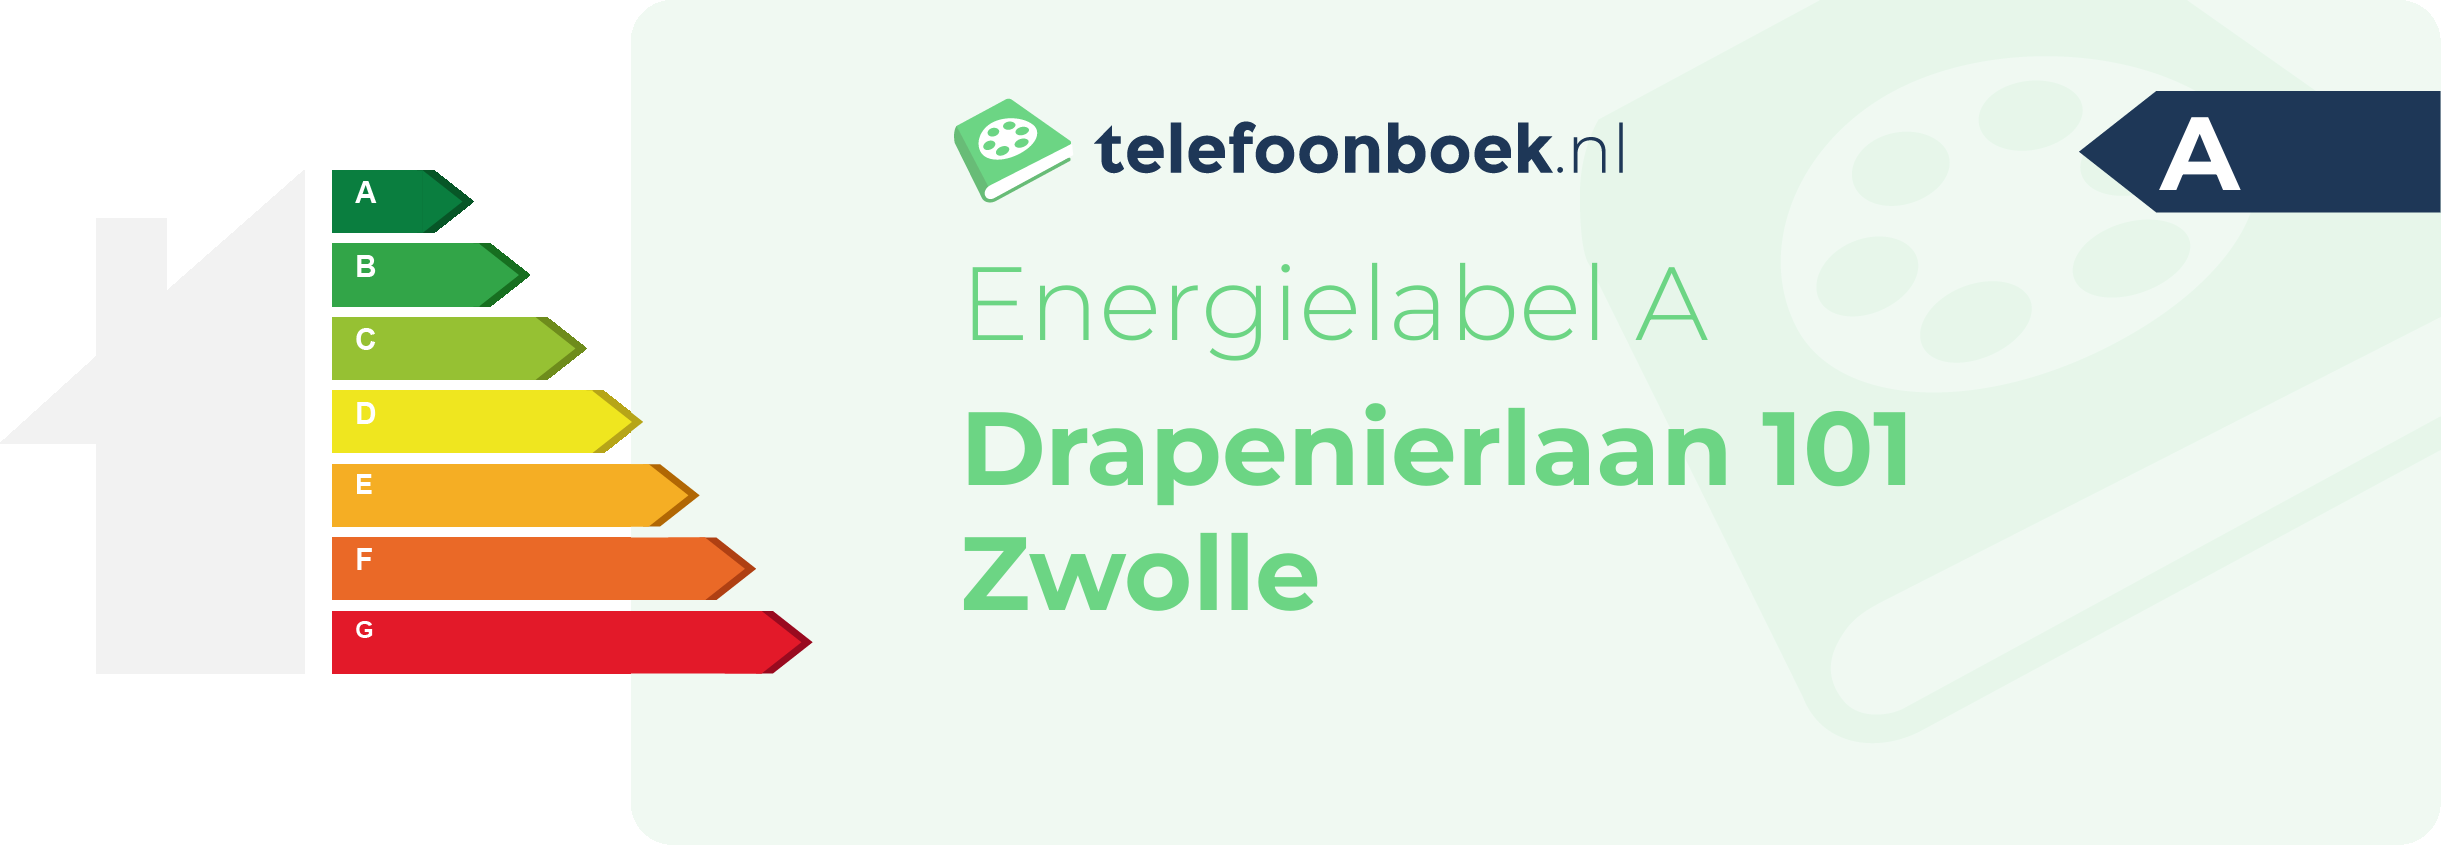 Energielabel Drapenierlaan 101 Zwolle